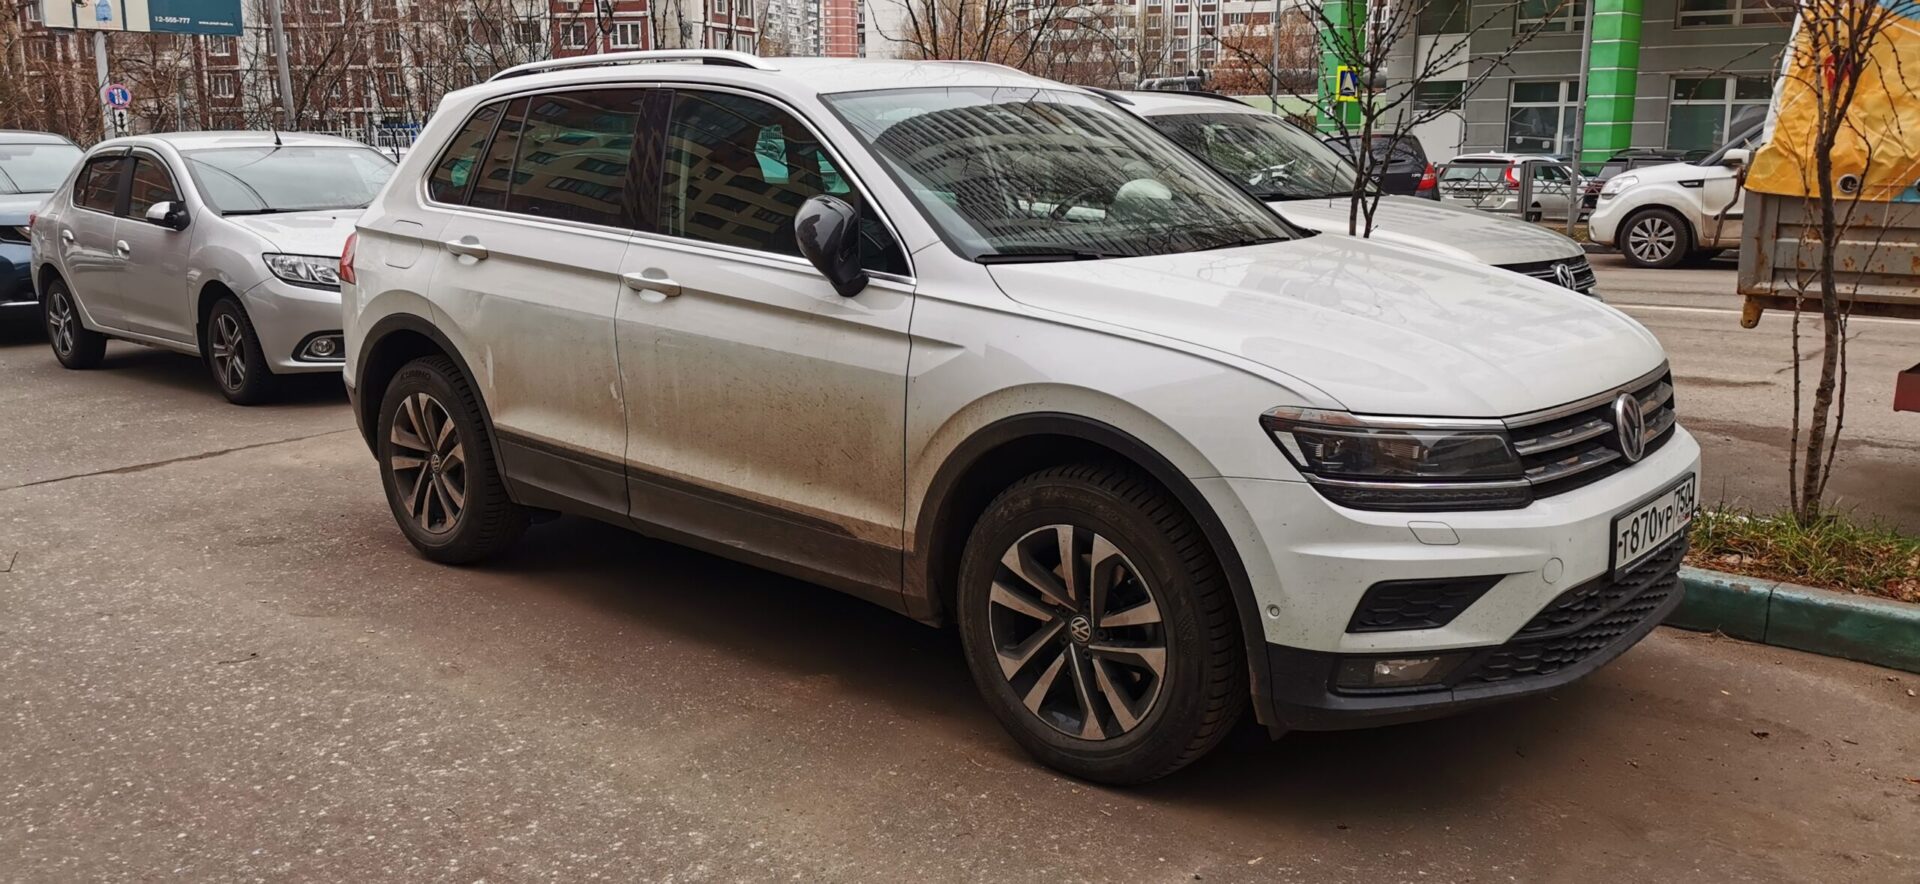 Автозавод Volkswagen в Братиславе приостановили до 8 апреля из-за отсутствия комплектующих